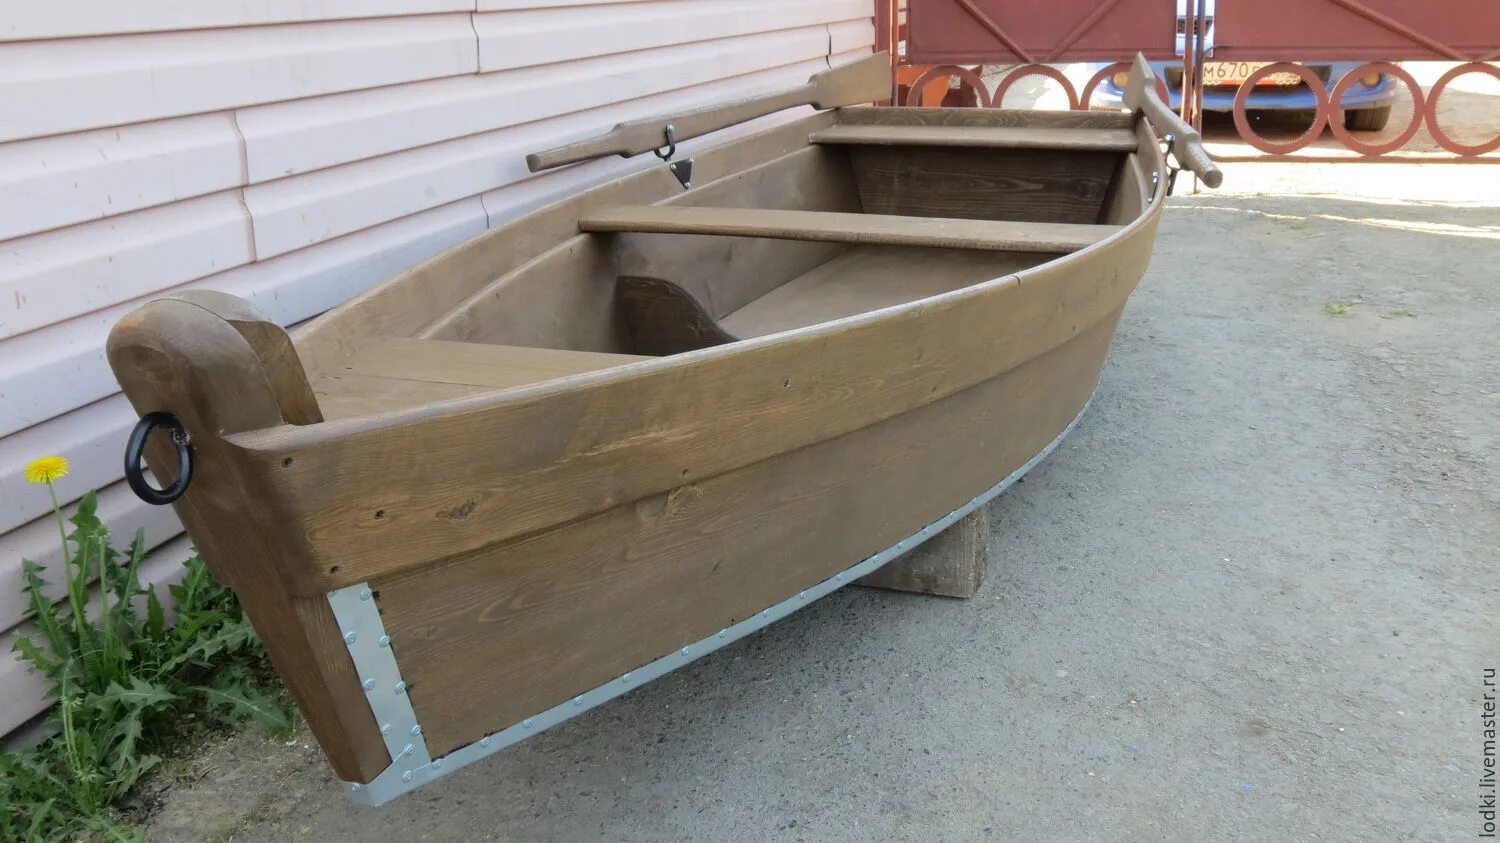 Лодка весельная деревянная. Весельные лодки из дерева. Узкая лодка деревянная 5 м. Деревянная лодка 4,5 м. Купить бу лодку нижний новгород